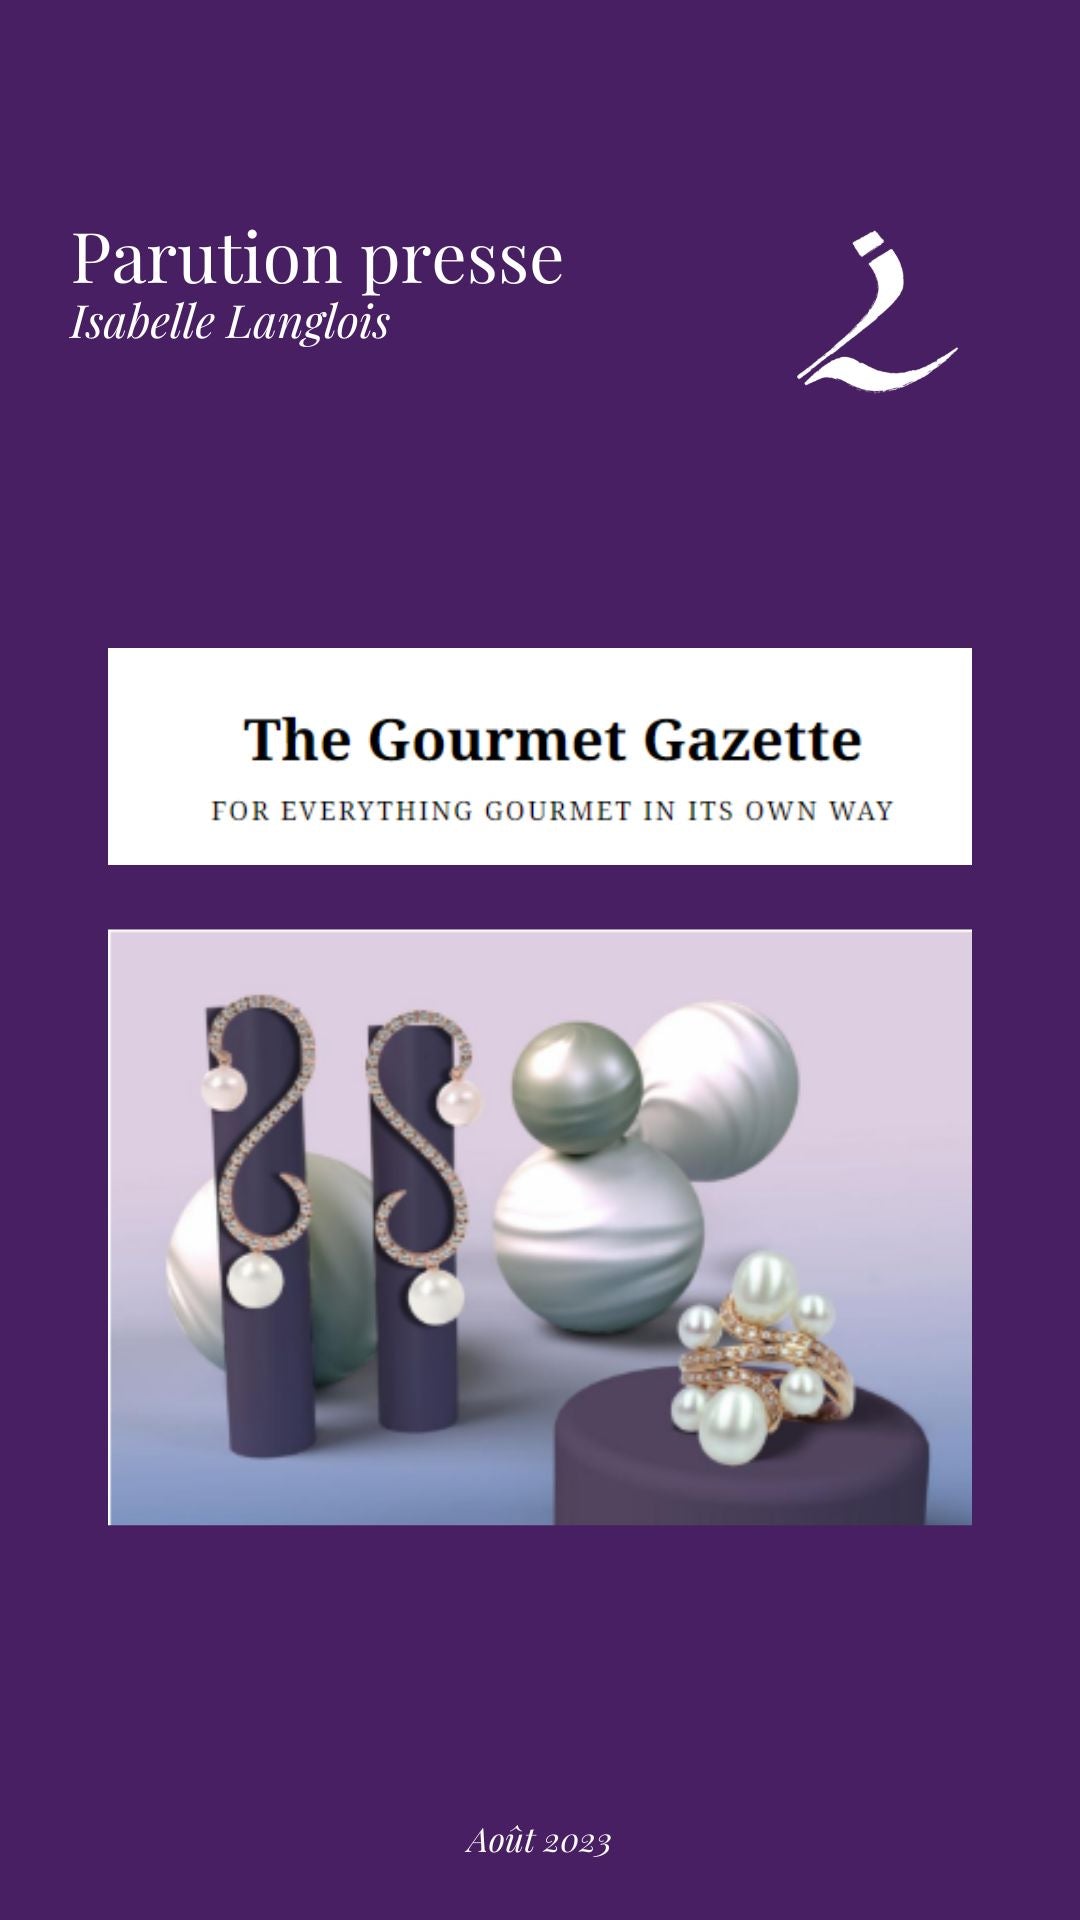 The Gourmet Gazette